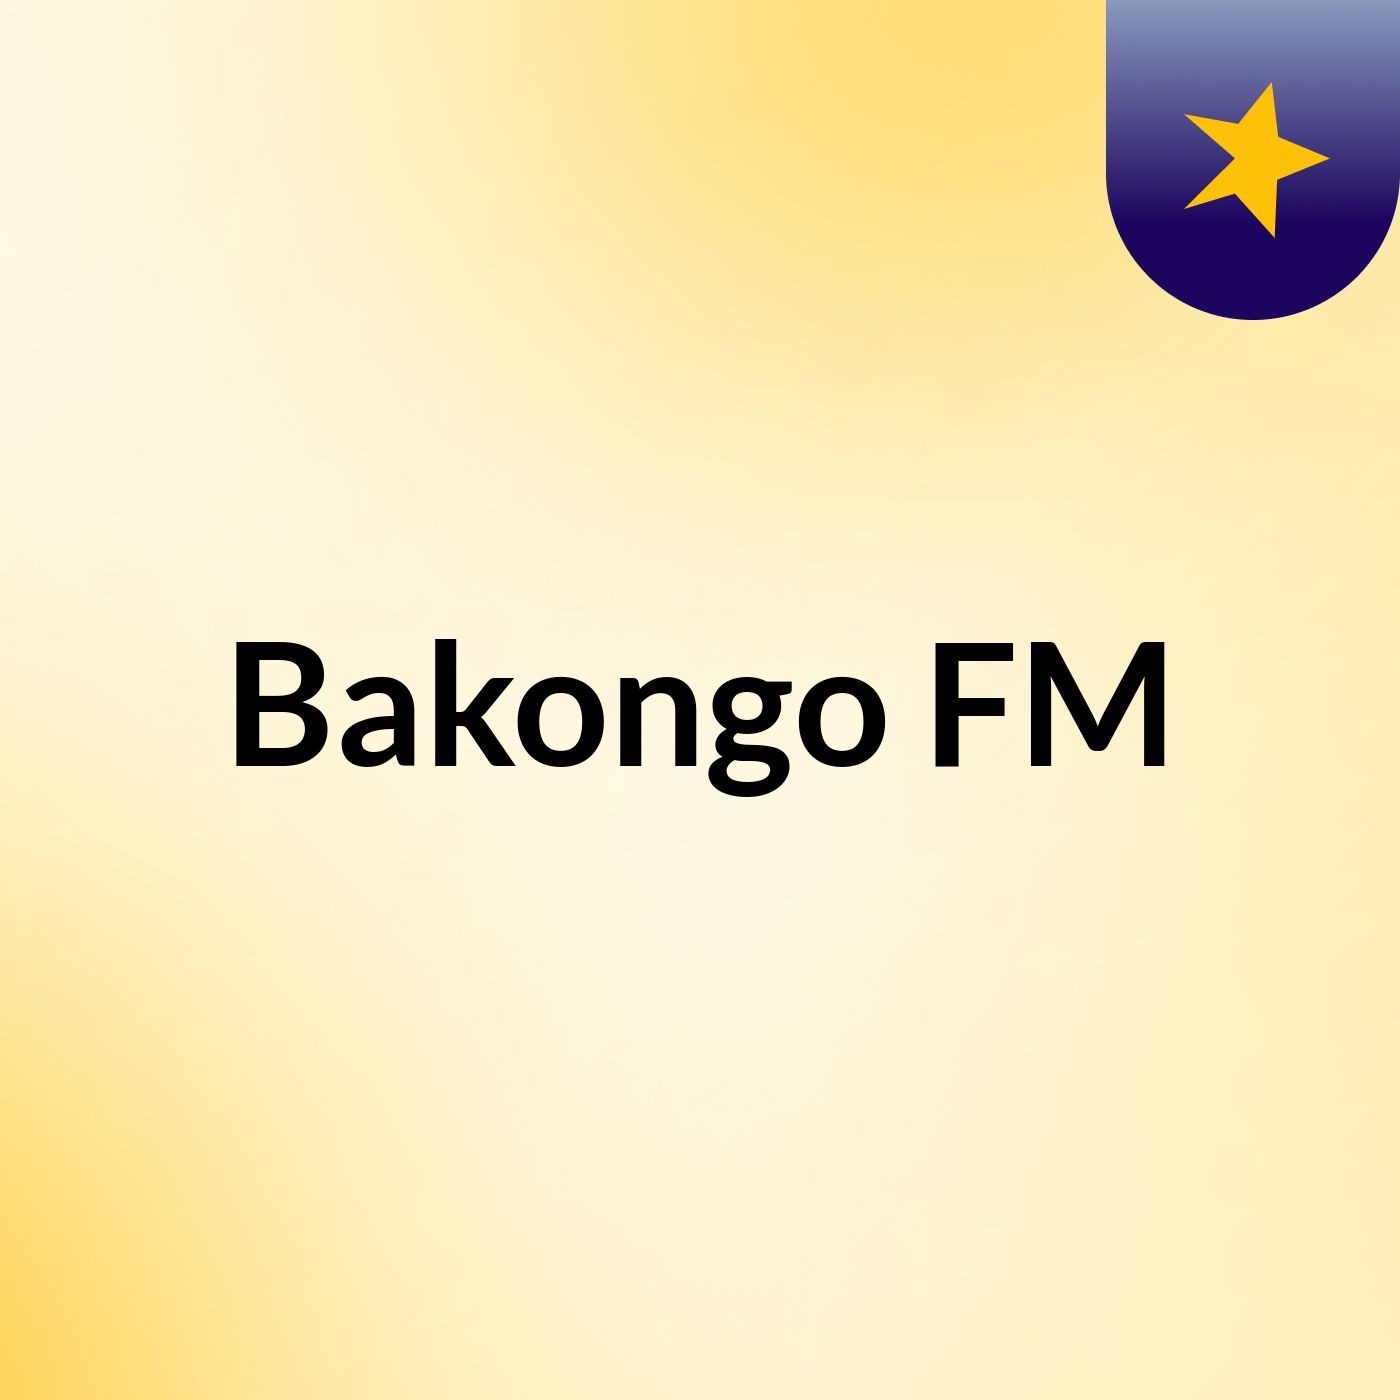 Bakongo FM